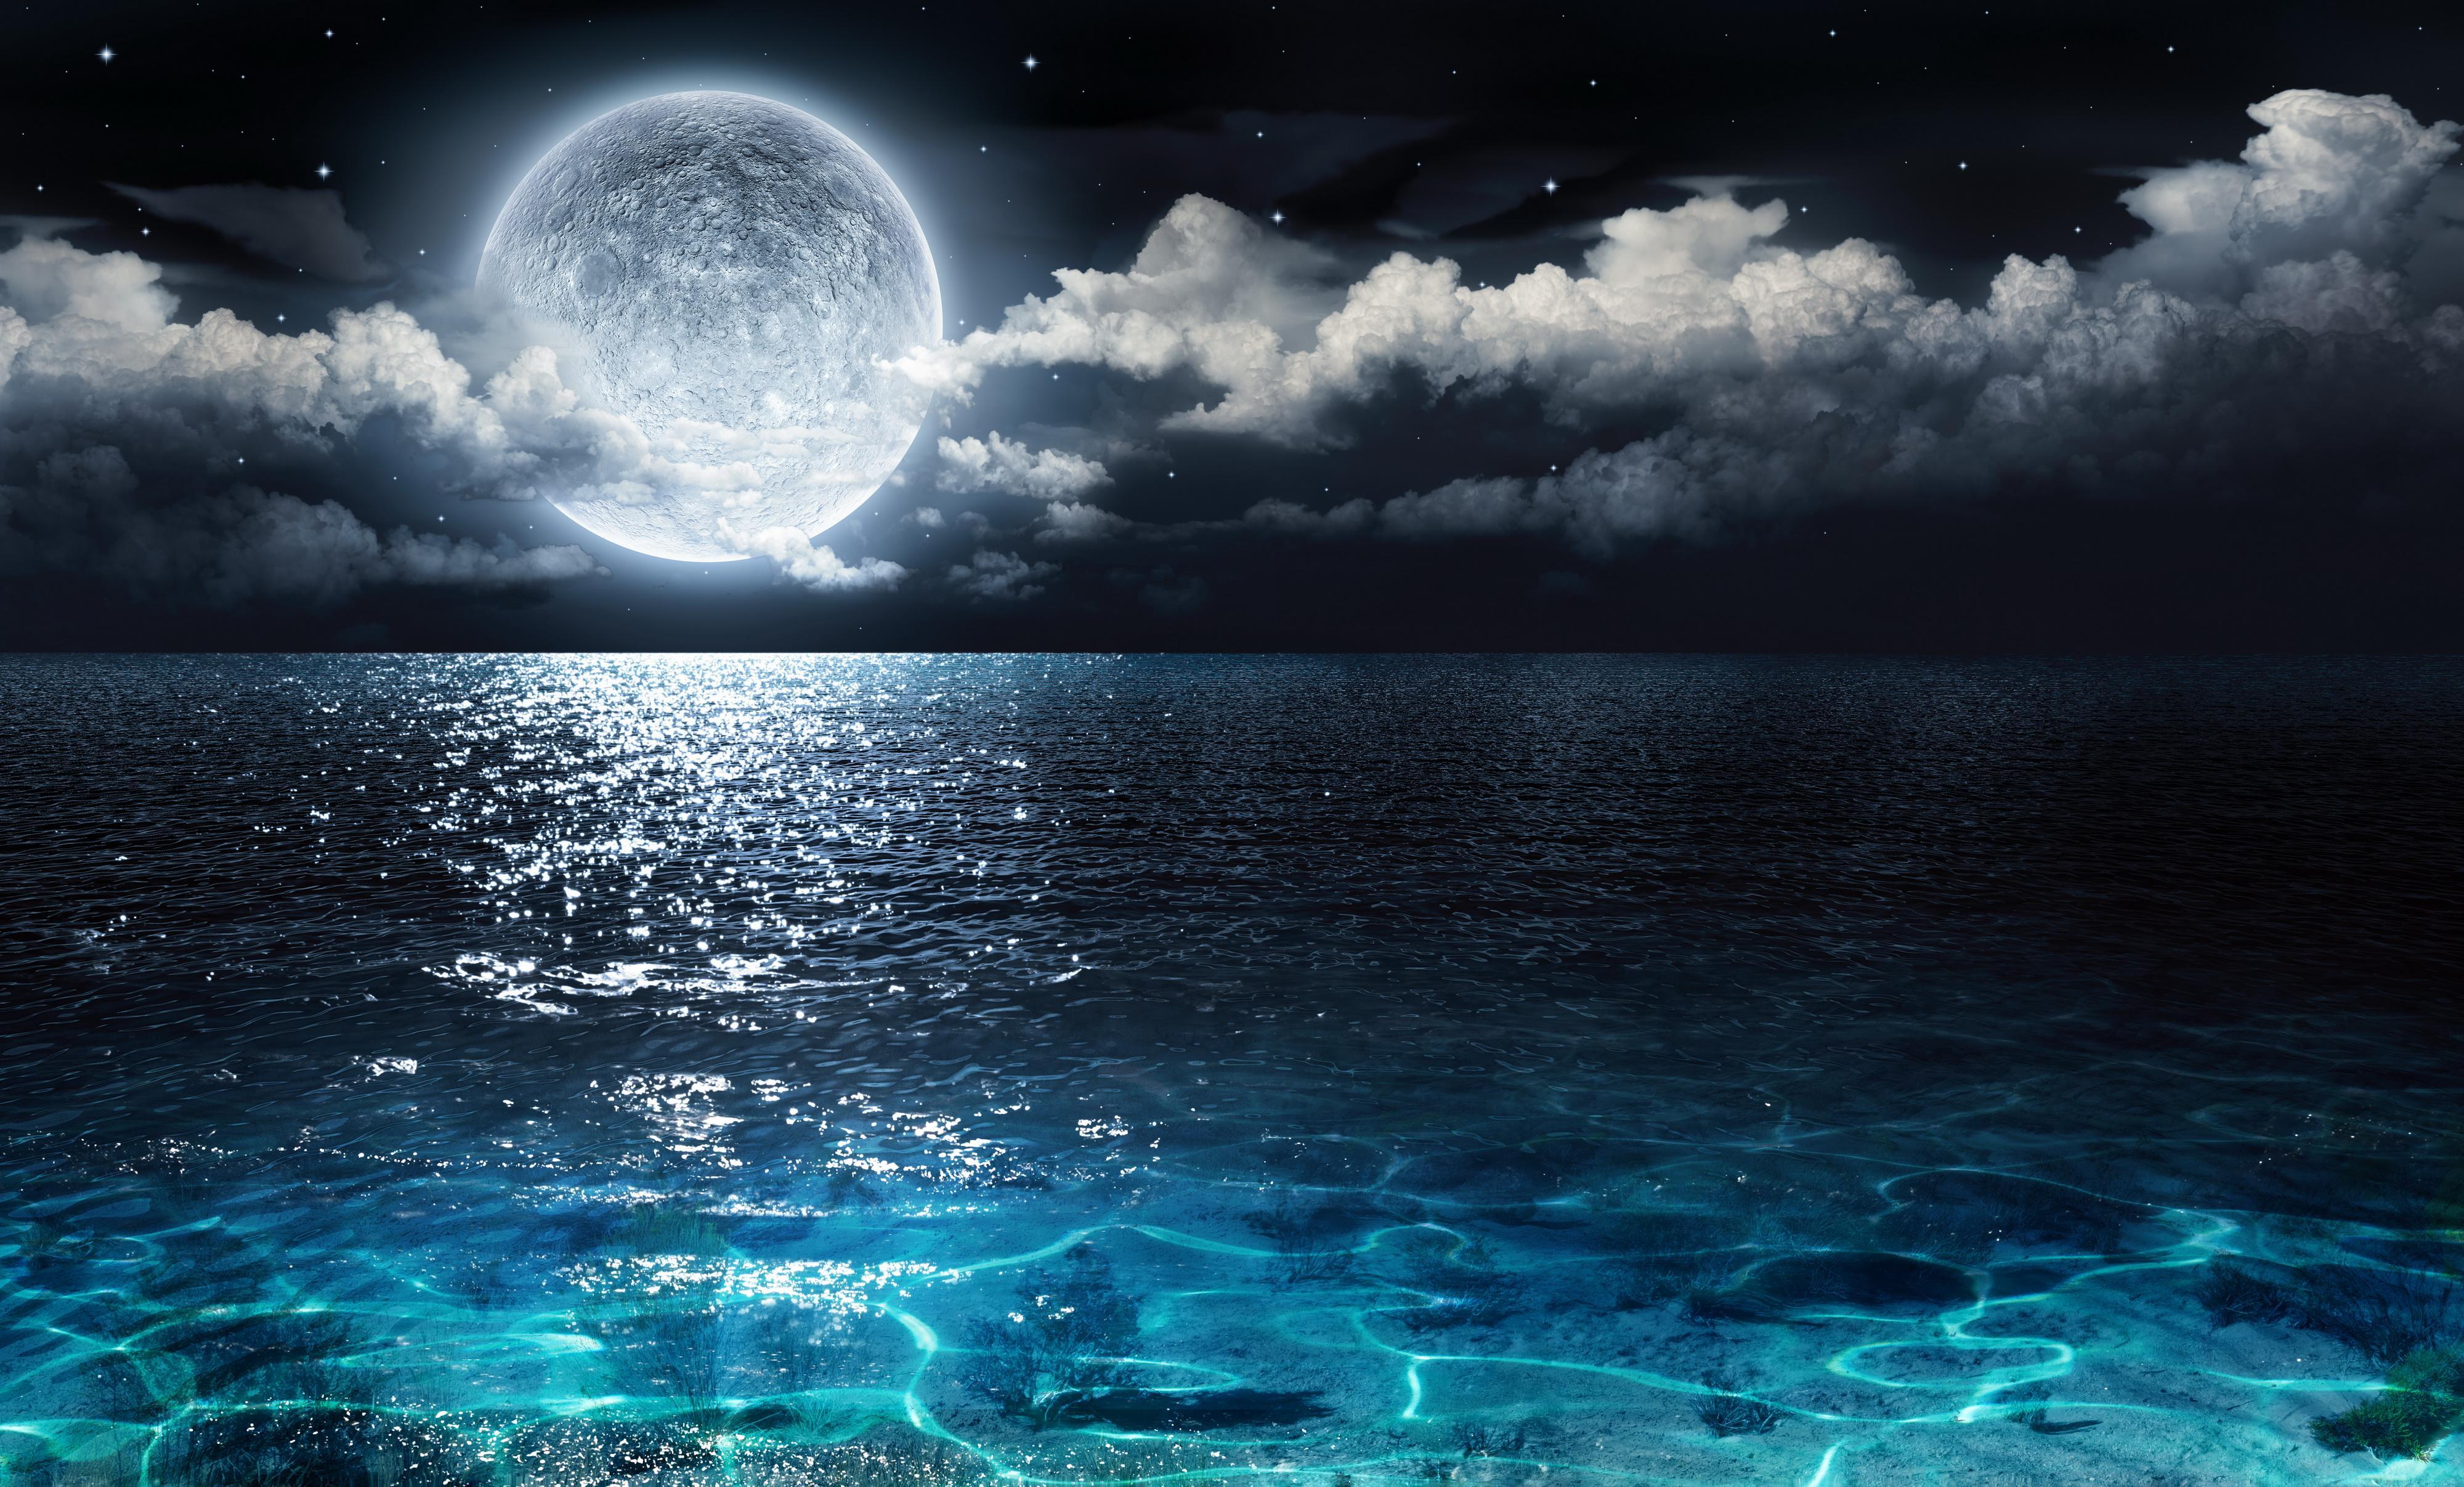 Ocean Night Sky Wallpapers - Top Free Ocean Night Sky Backgrounds